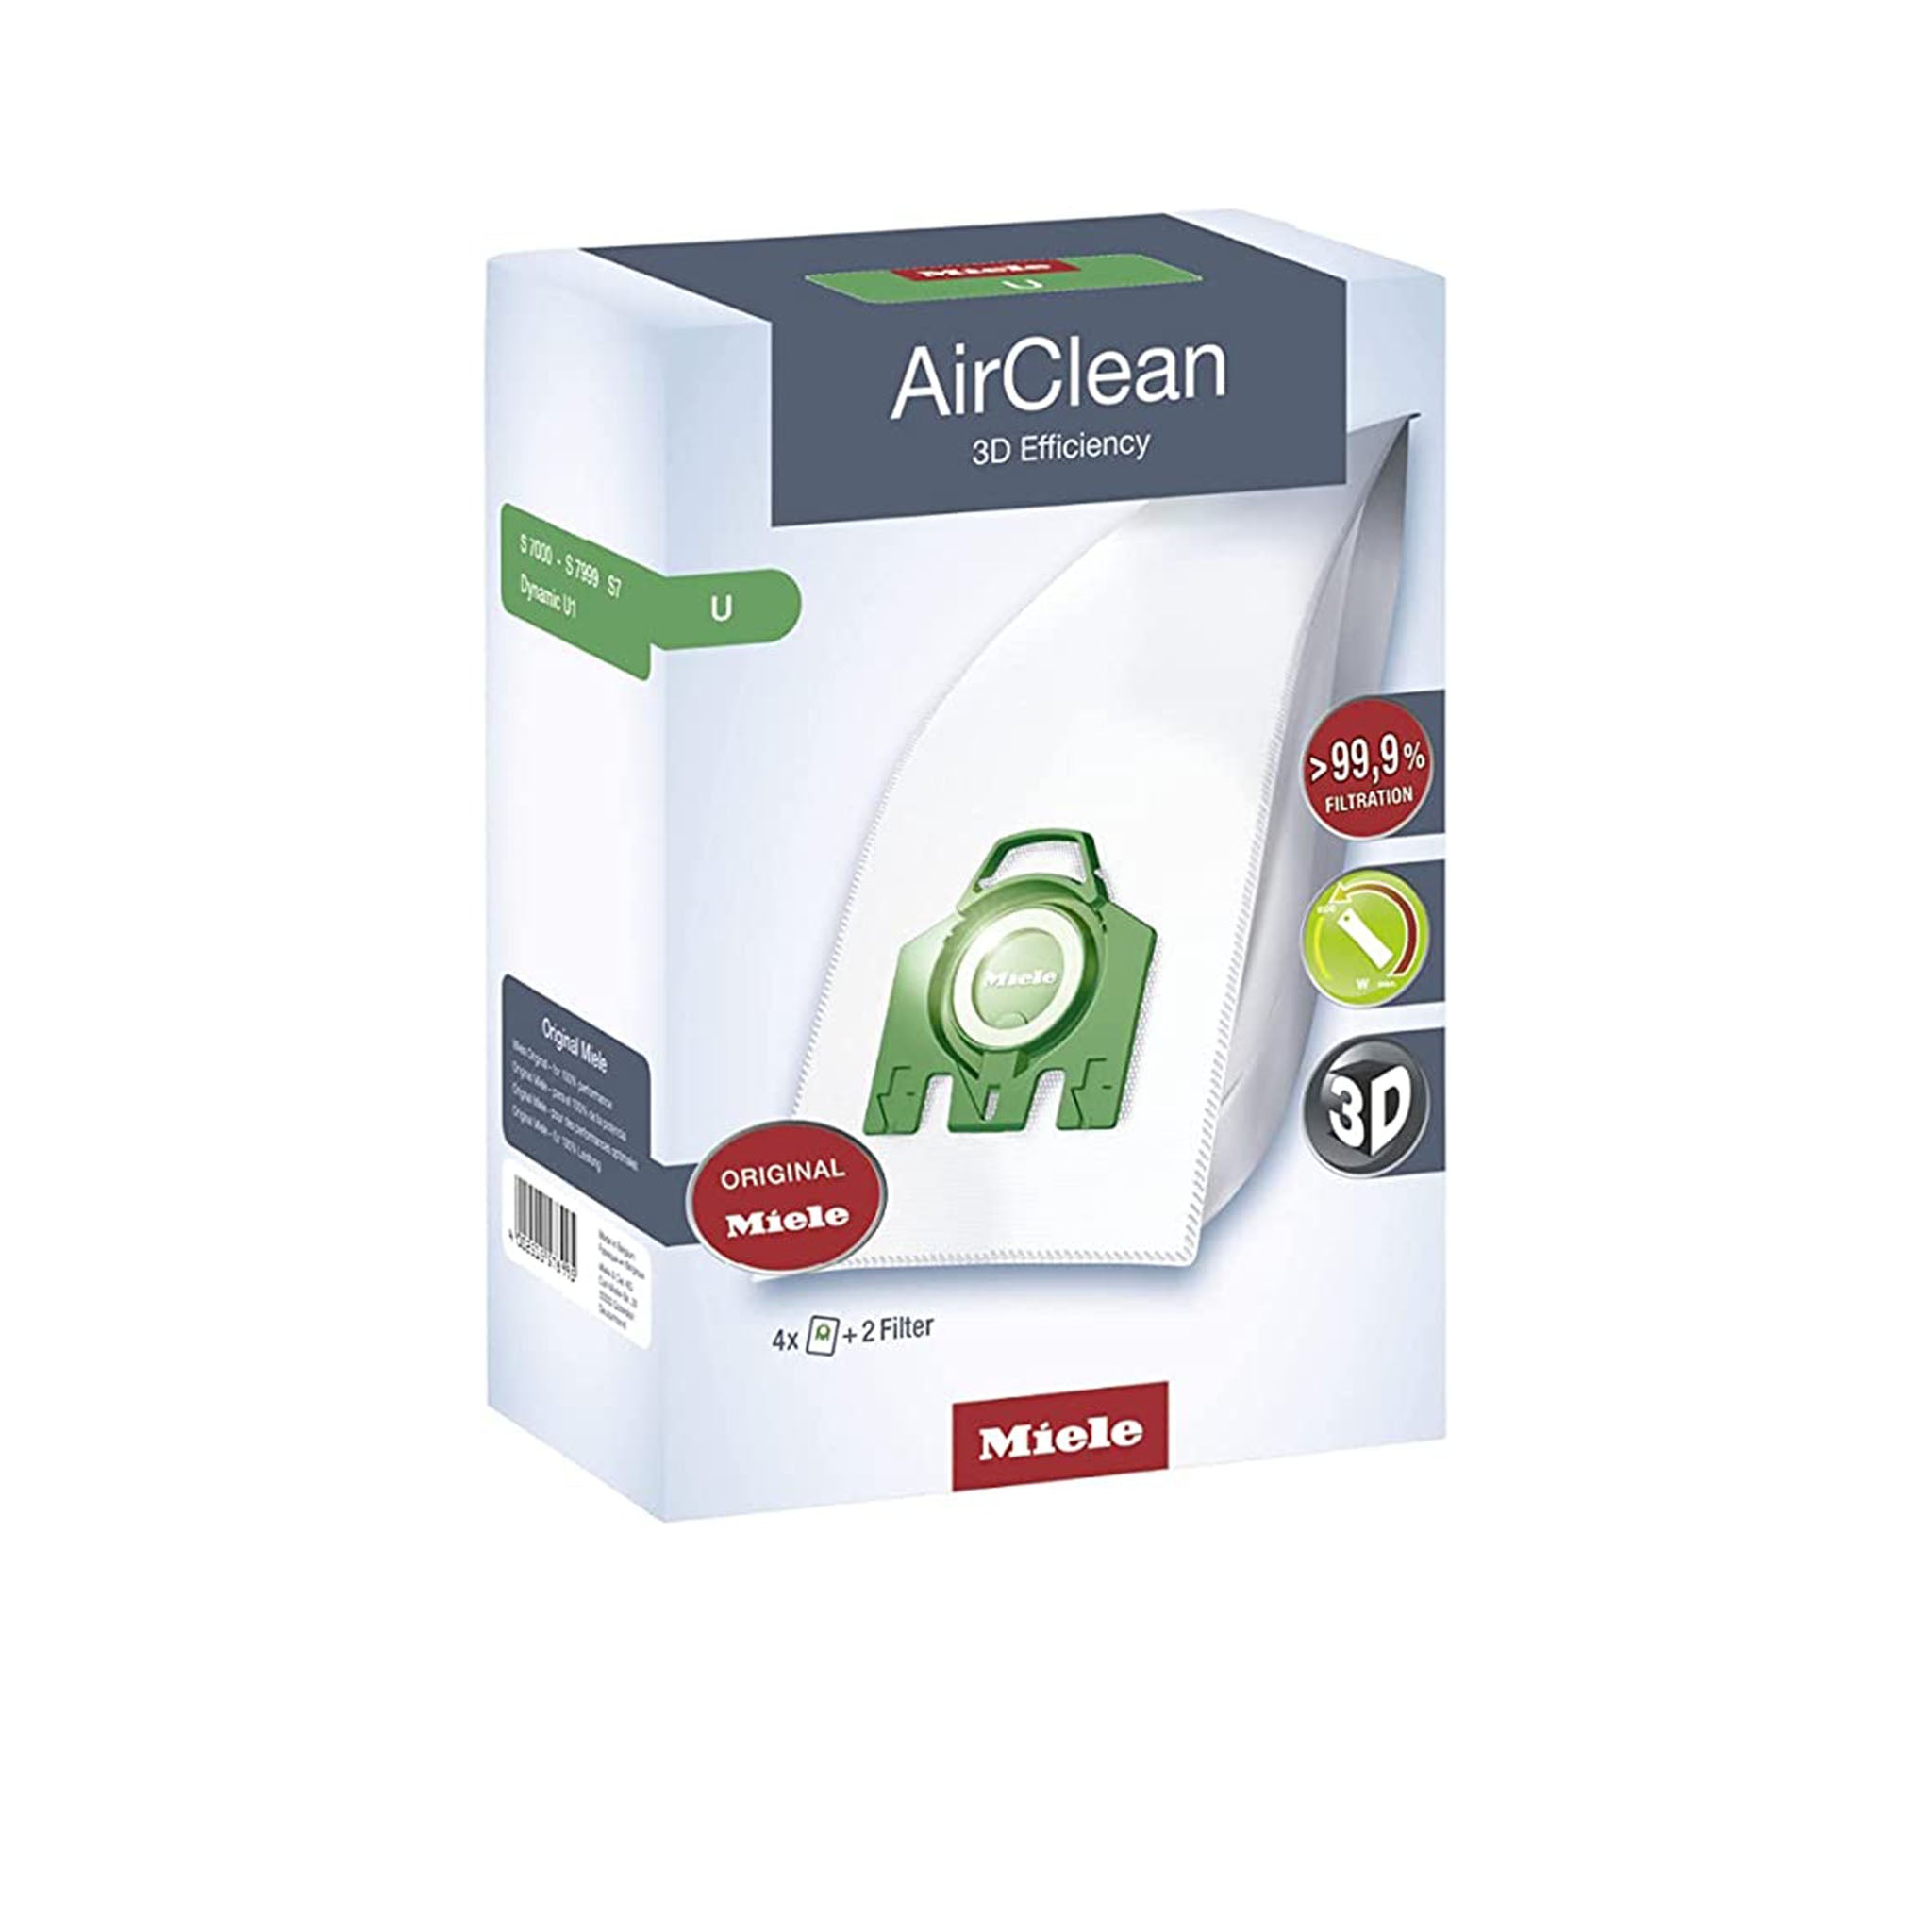 Miele AirClean 3D Efficiency Filtros de vacío (Tipo U)